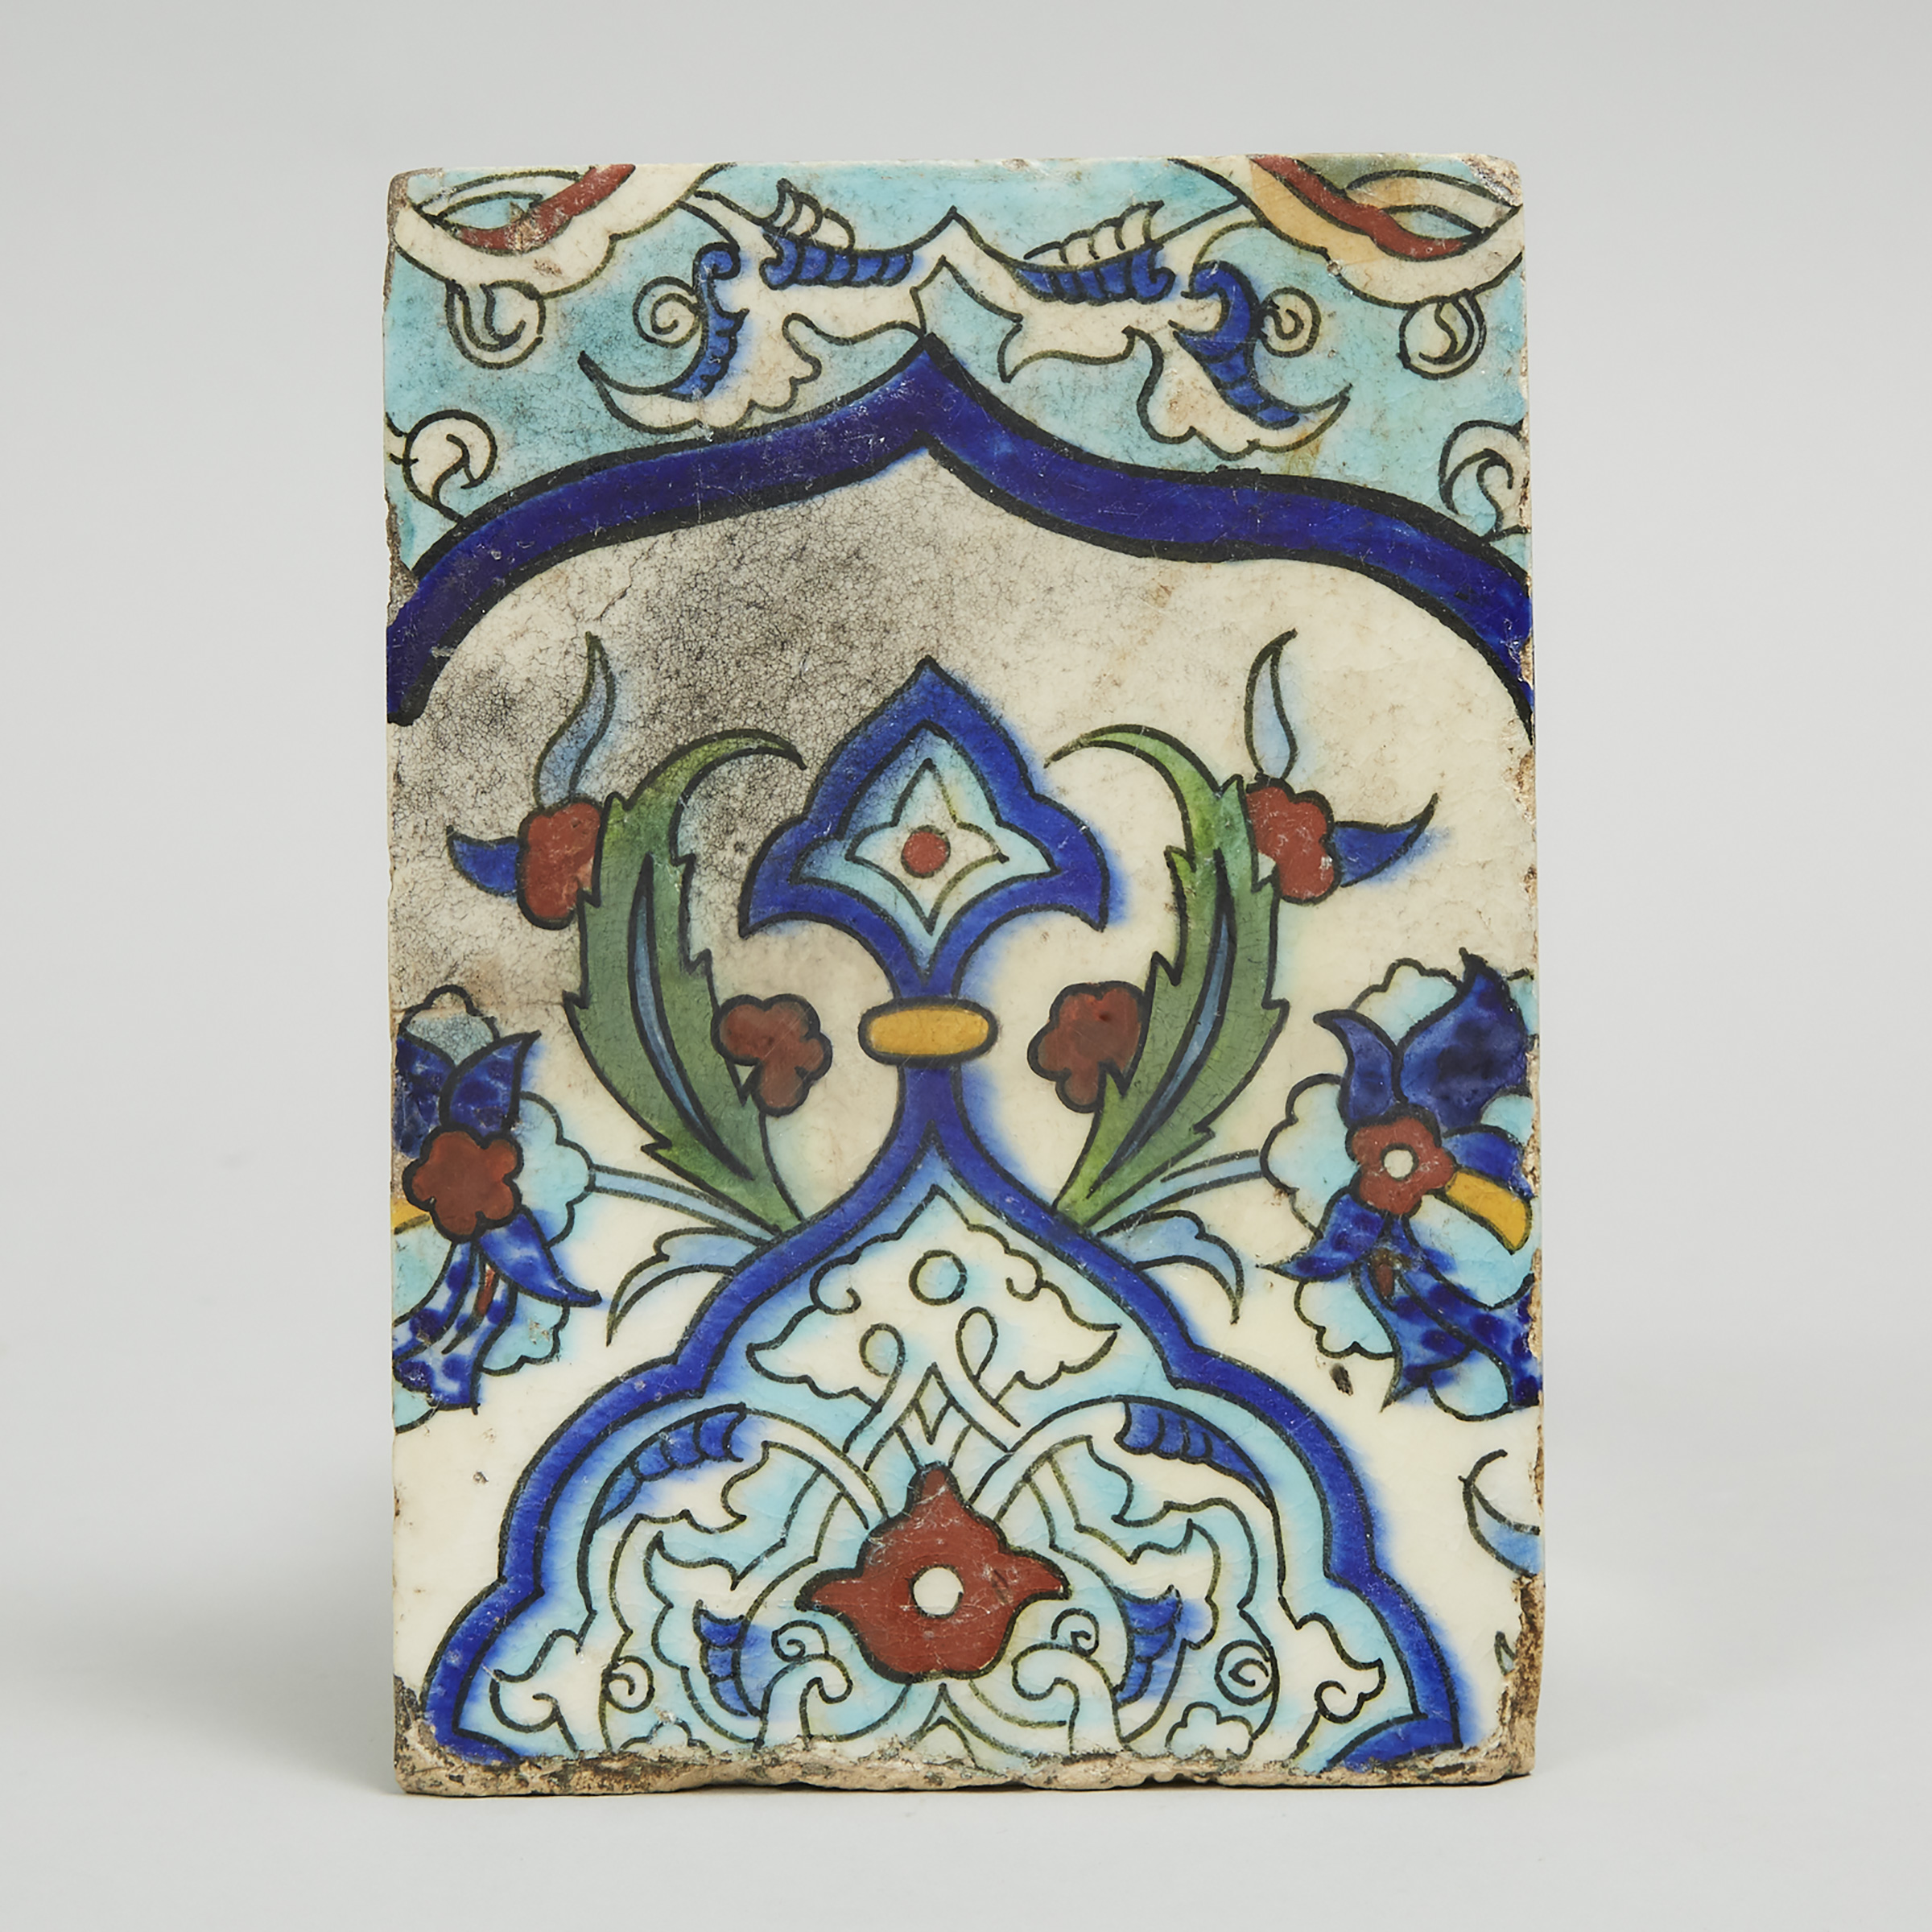 Damascus Pottery Polychrome Tile, Ottoman Syria, 18th century